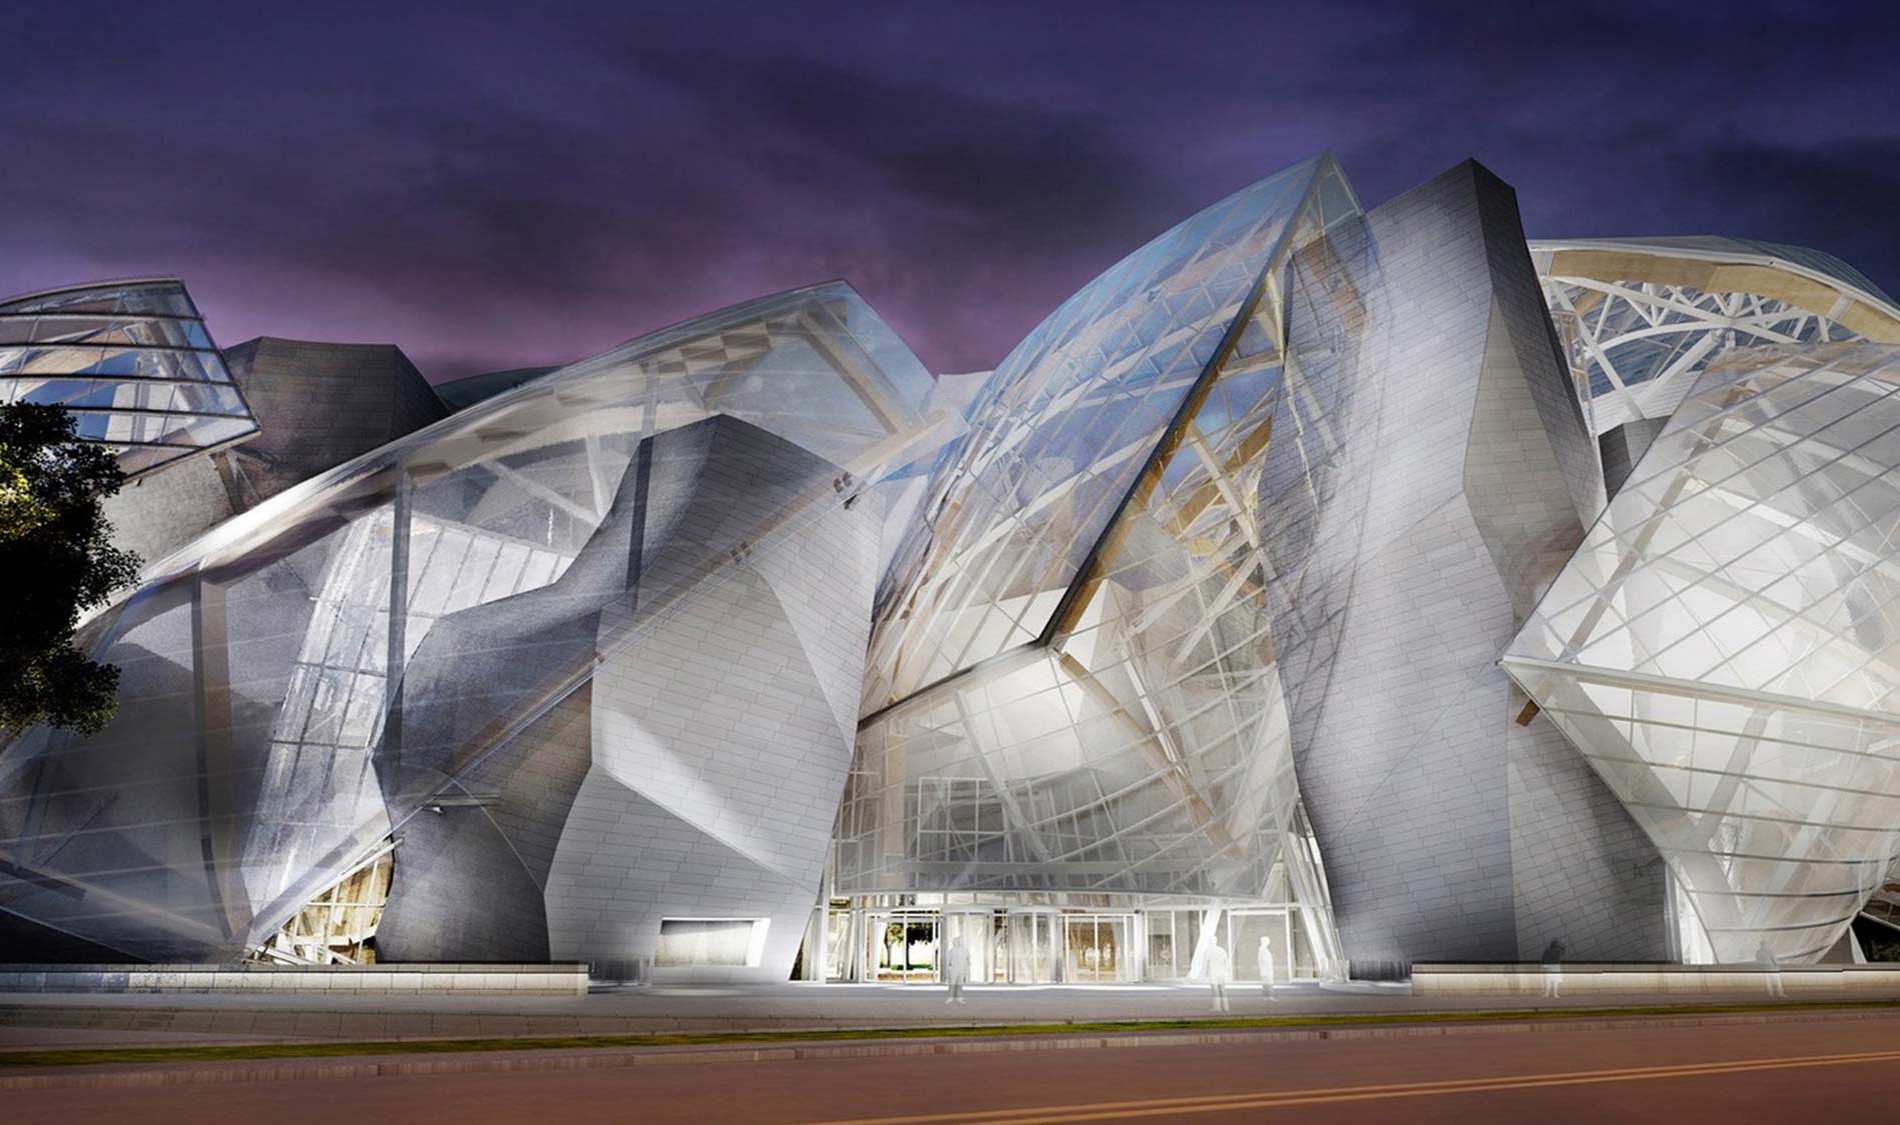 Arquitetura contemporânea, é cheia de absurdos? Fundação Louis Vuitton, Projeto Frank Ghery arquiteto, Paris. Blog Obra Atelier